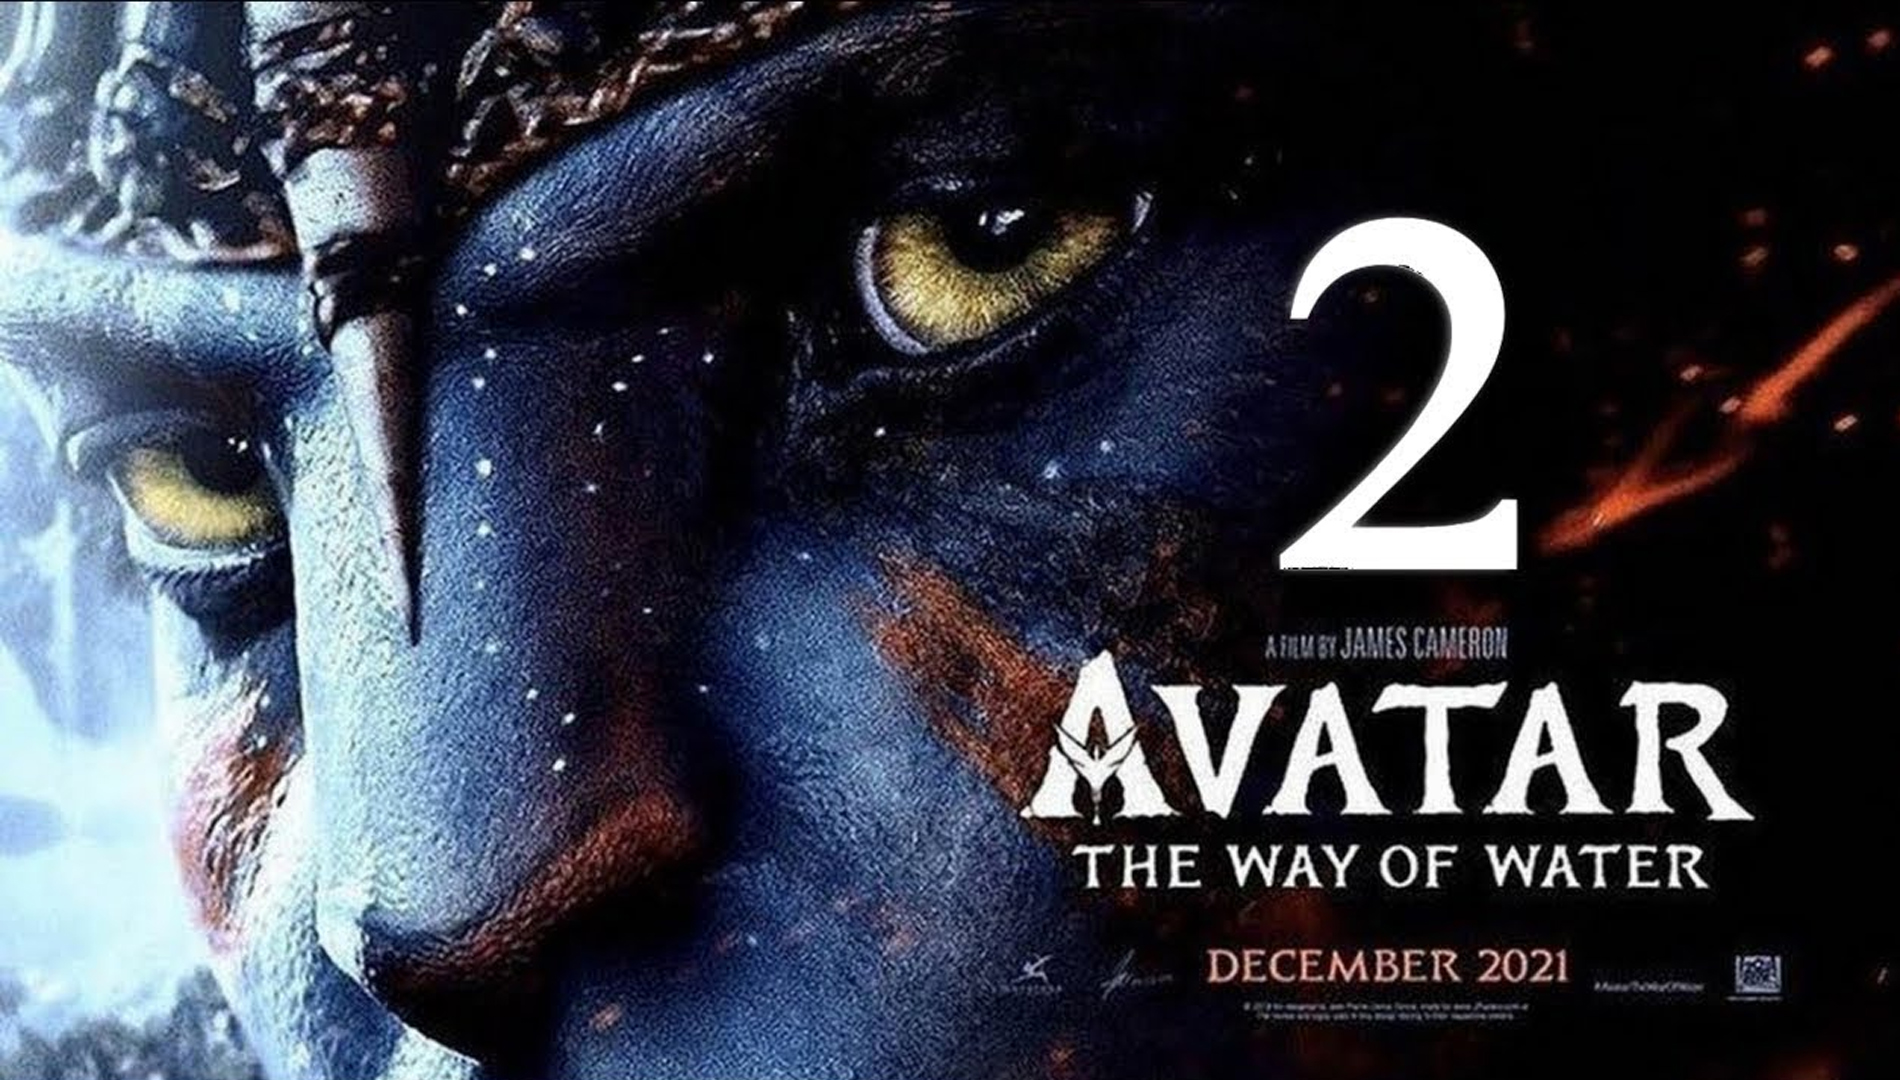 'Avatar: The Way of Water' mở ra thế giới hấp dẫn, kỳ vĩ của James Cameron